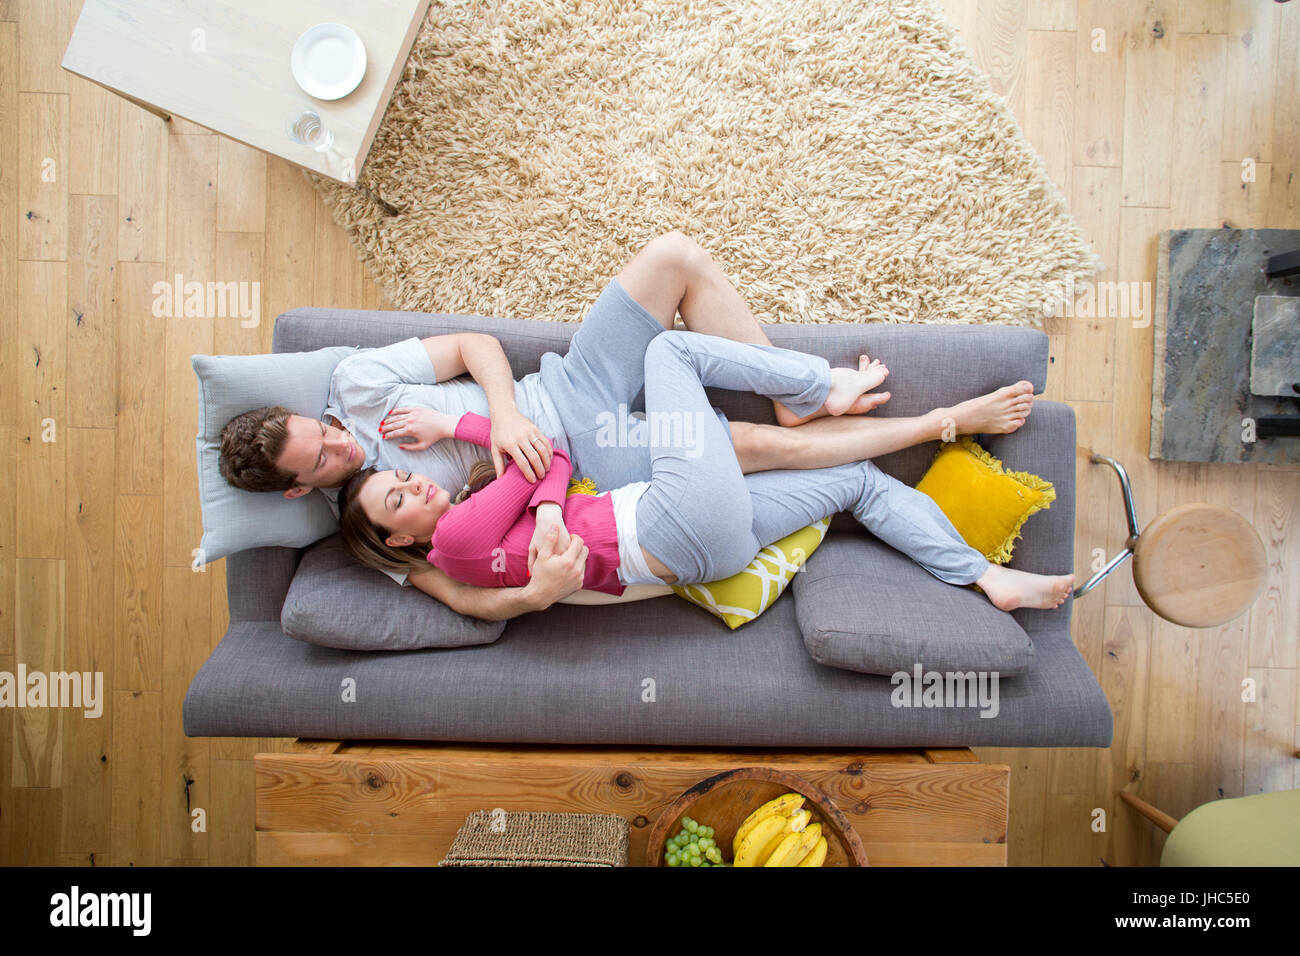 Mitte erwachsenes paar sind zusammen auf dem Sofa kuschelte sich während sie schlafen. Stockfoto